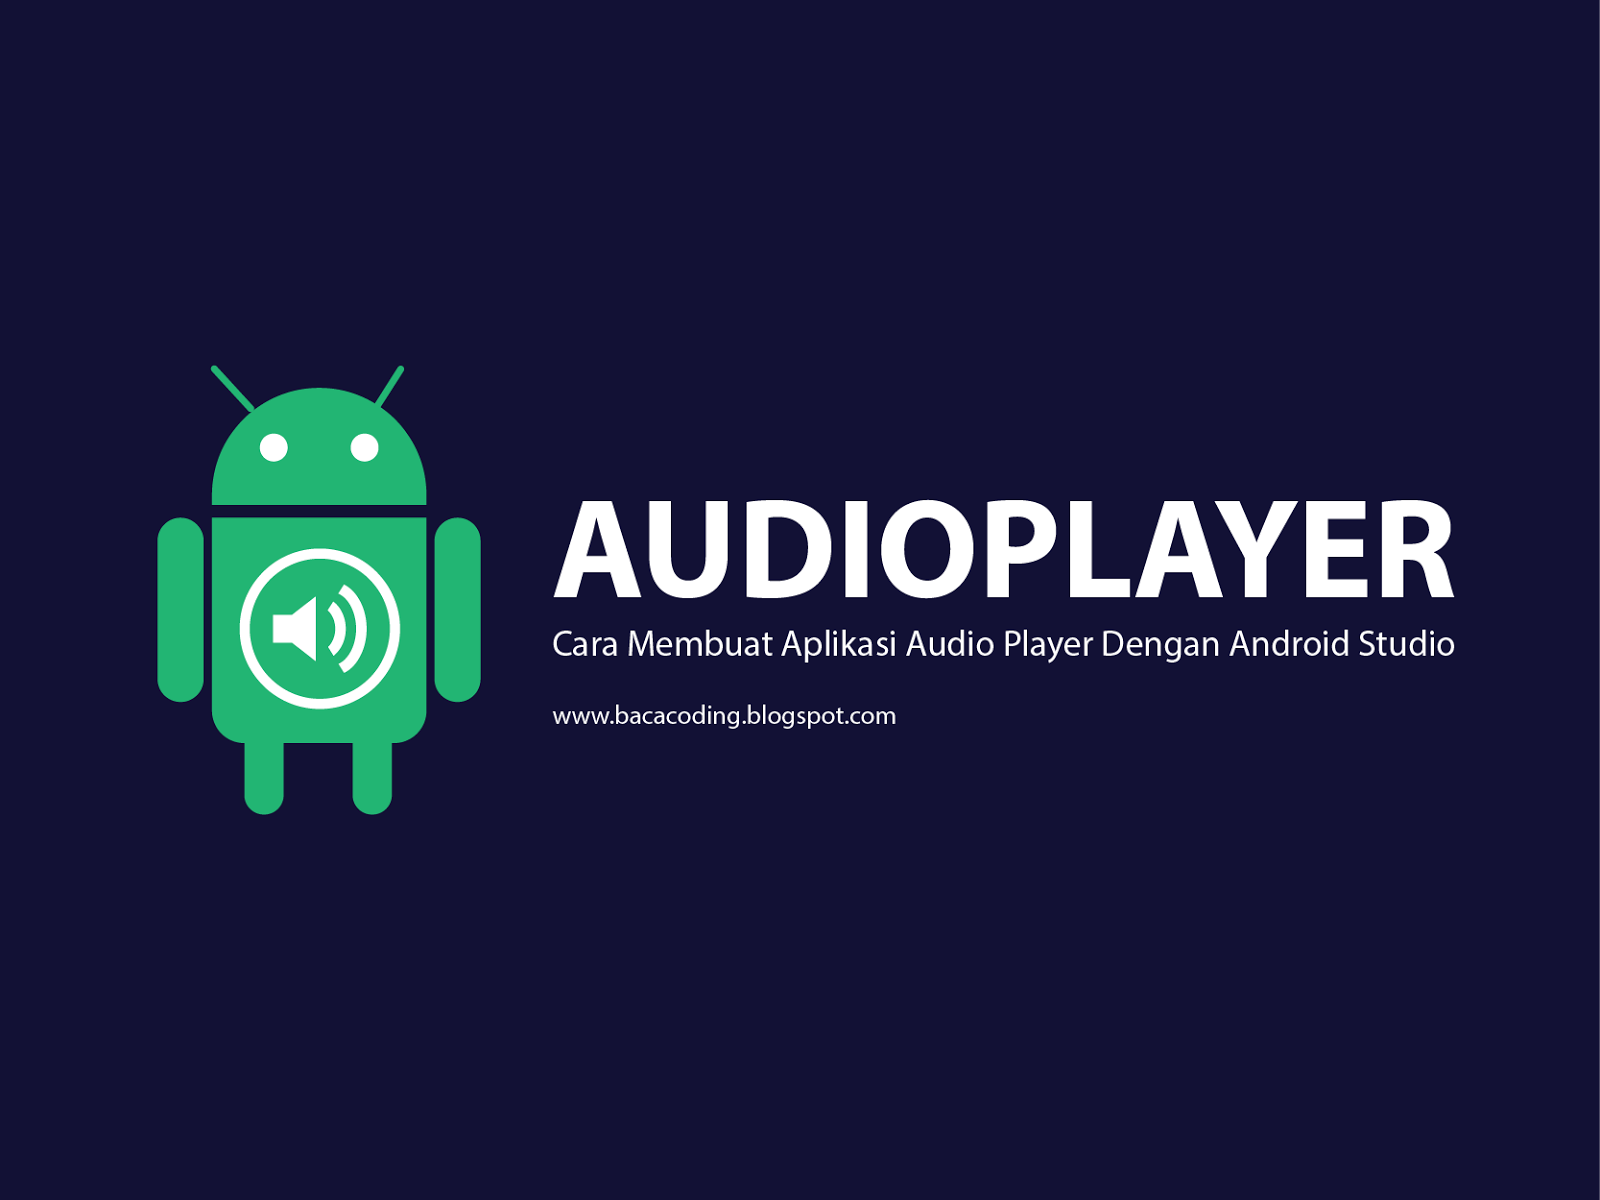 Cara Membuat Aplikasi Audio Player Keren Dengan Android Studio - BACA